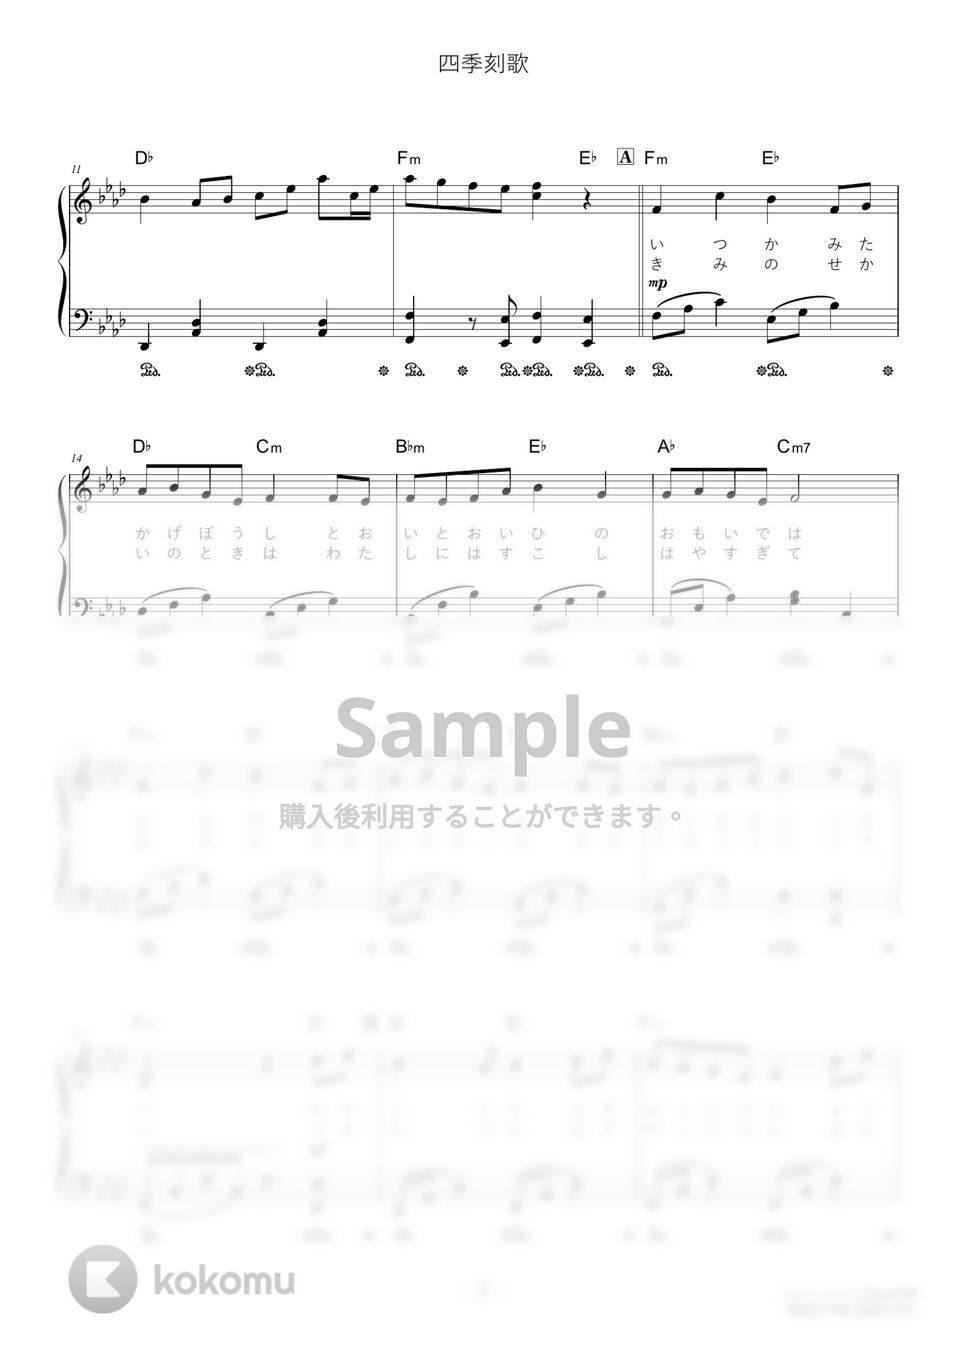 綿飴 - 四季刻歌 (難易度:★★☆☆☆/歌詞・コード・ペダル付き) by Dさん